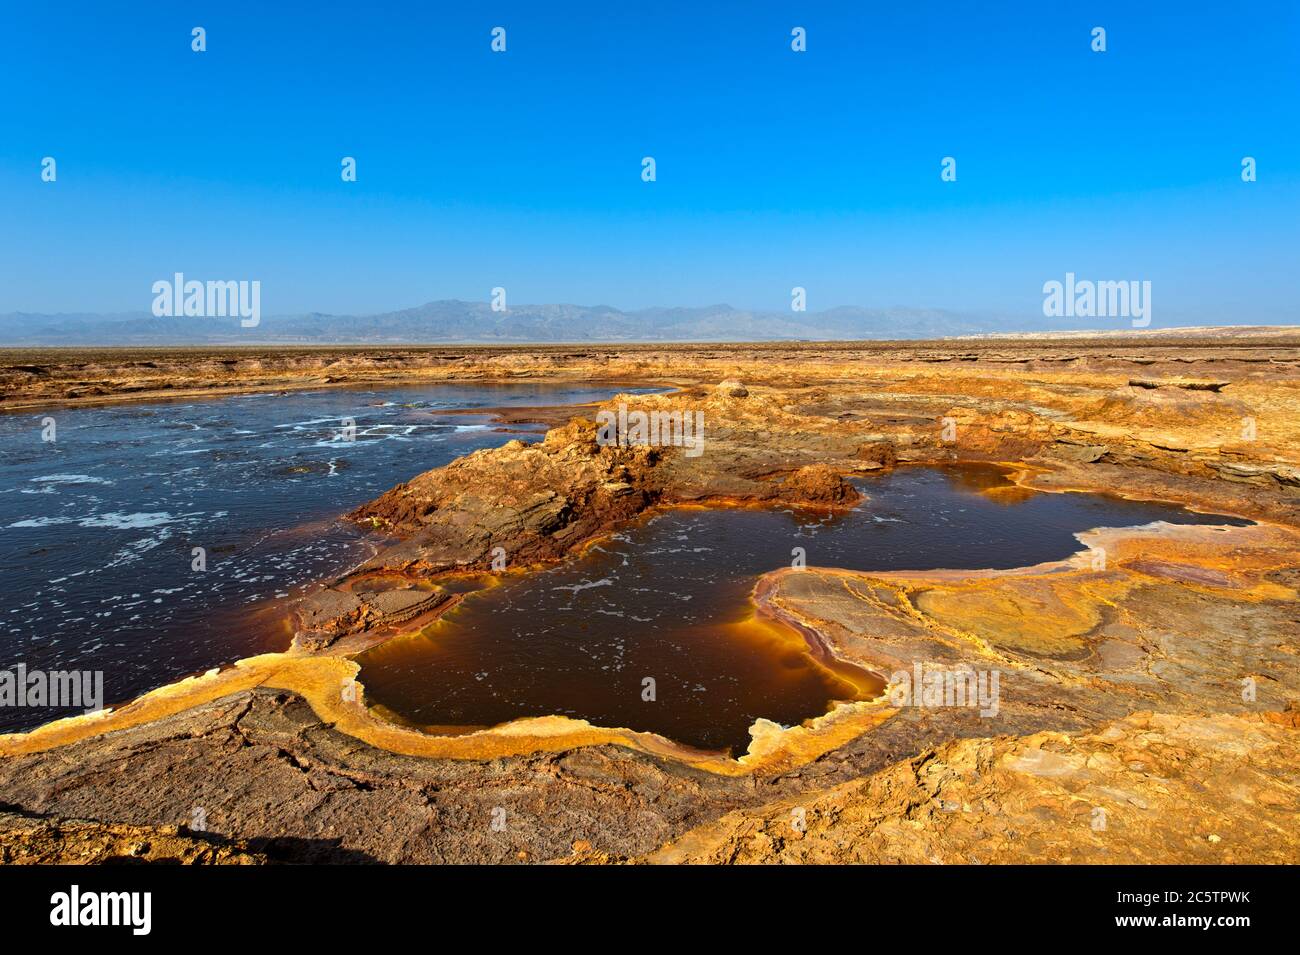 L'étang de Gaet'ale, également lac huileux, avec eau hypersaline, zone géothermique de Dallol, Hamadela, dépression de Danakil, triangle Afar, Éthiopie Banque D'Images